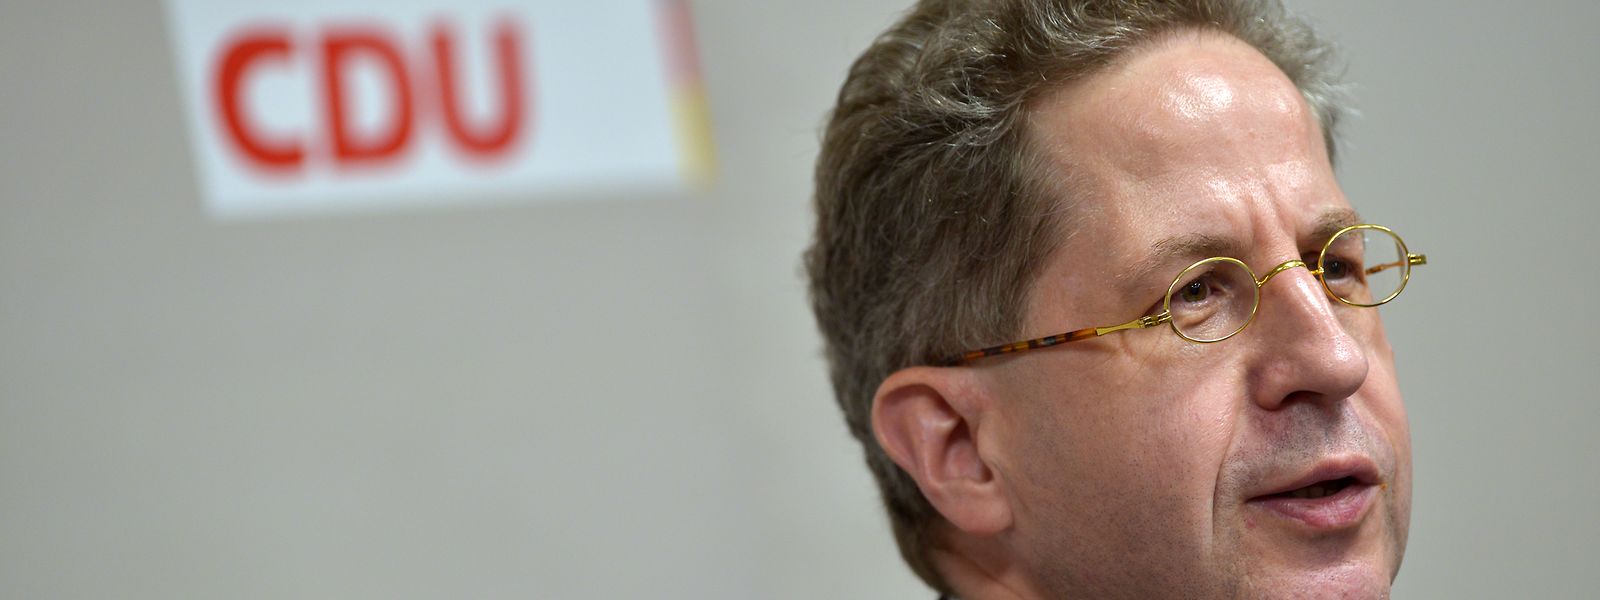 Das Präsidium der CDU hat Ex-Verfassungsschutzpräsident Hans-Georg Maaßen einstimmig zum Austritt aus der Partei aufgefordert.